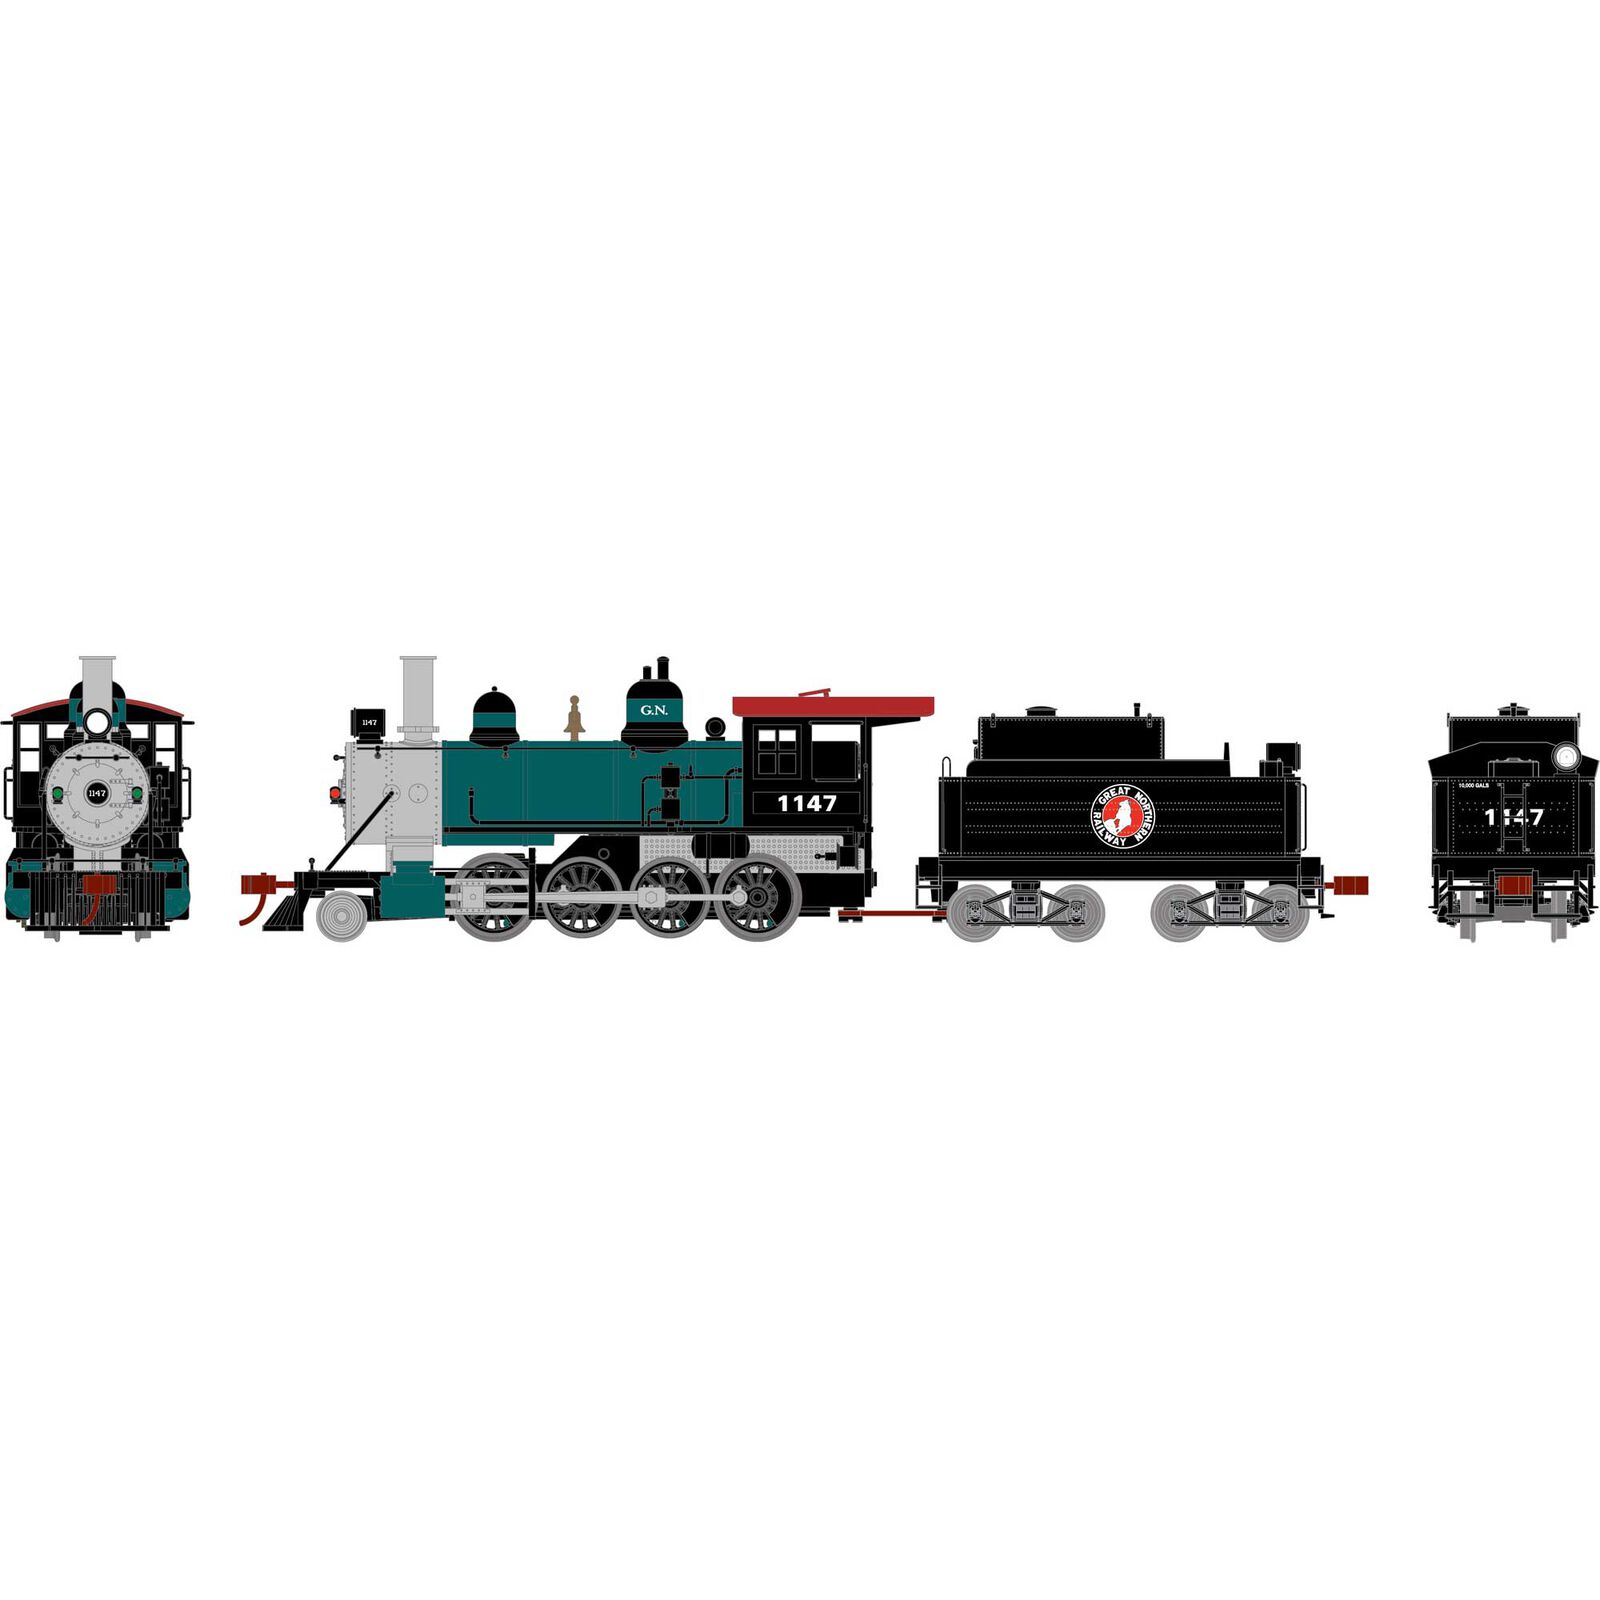 HO Old Time 2-8-0 Locomotive, GN #1147